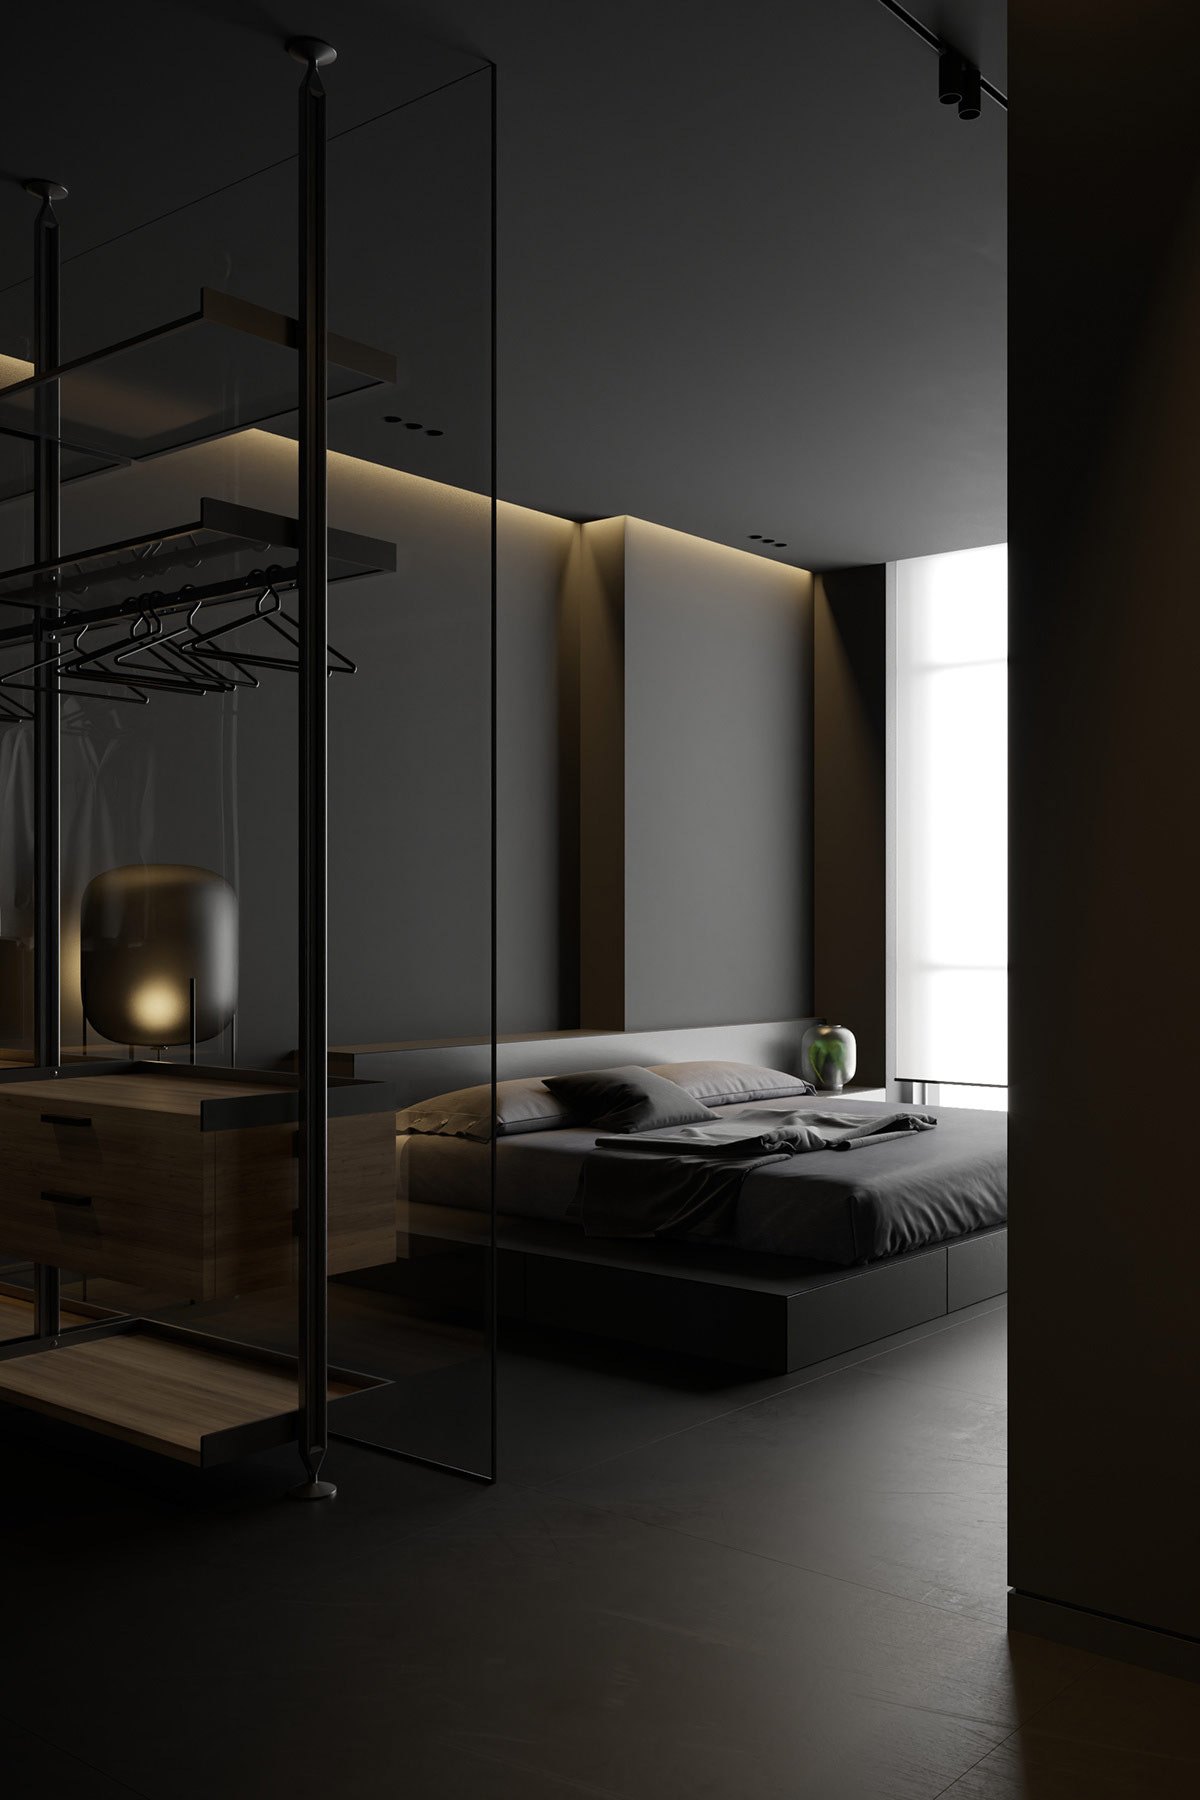 高级黑搭载优雅灯光,打造有格调的家居空间